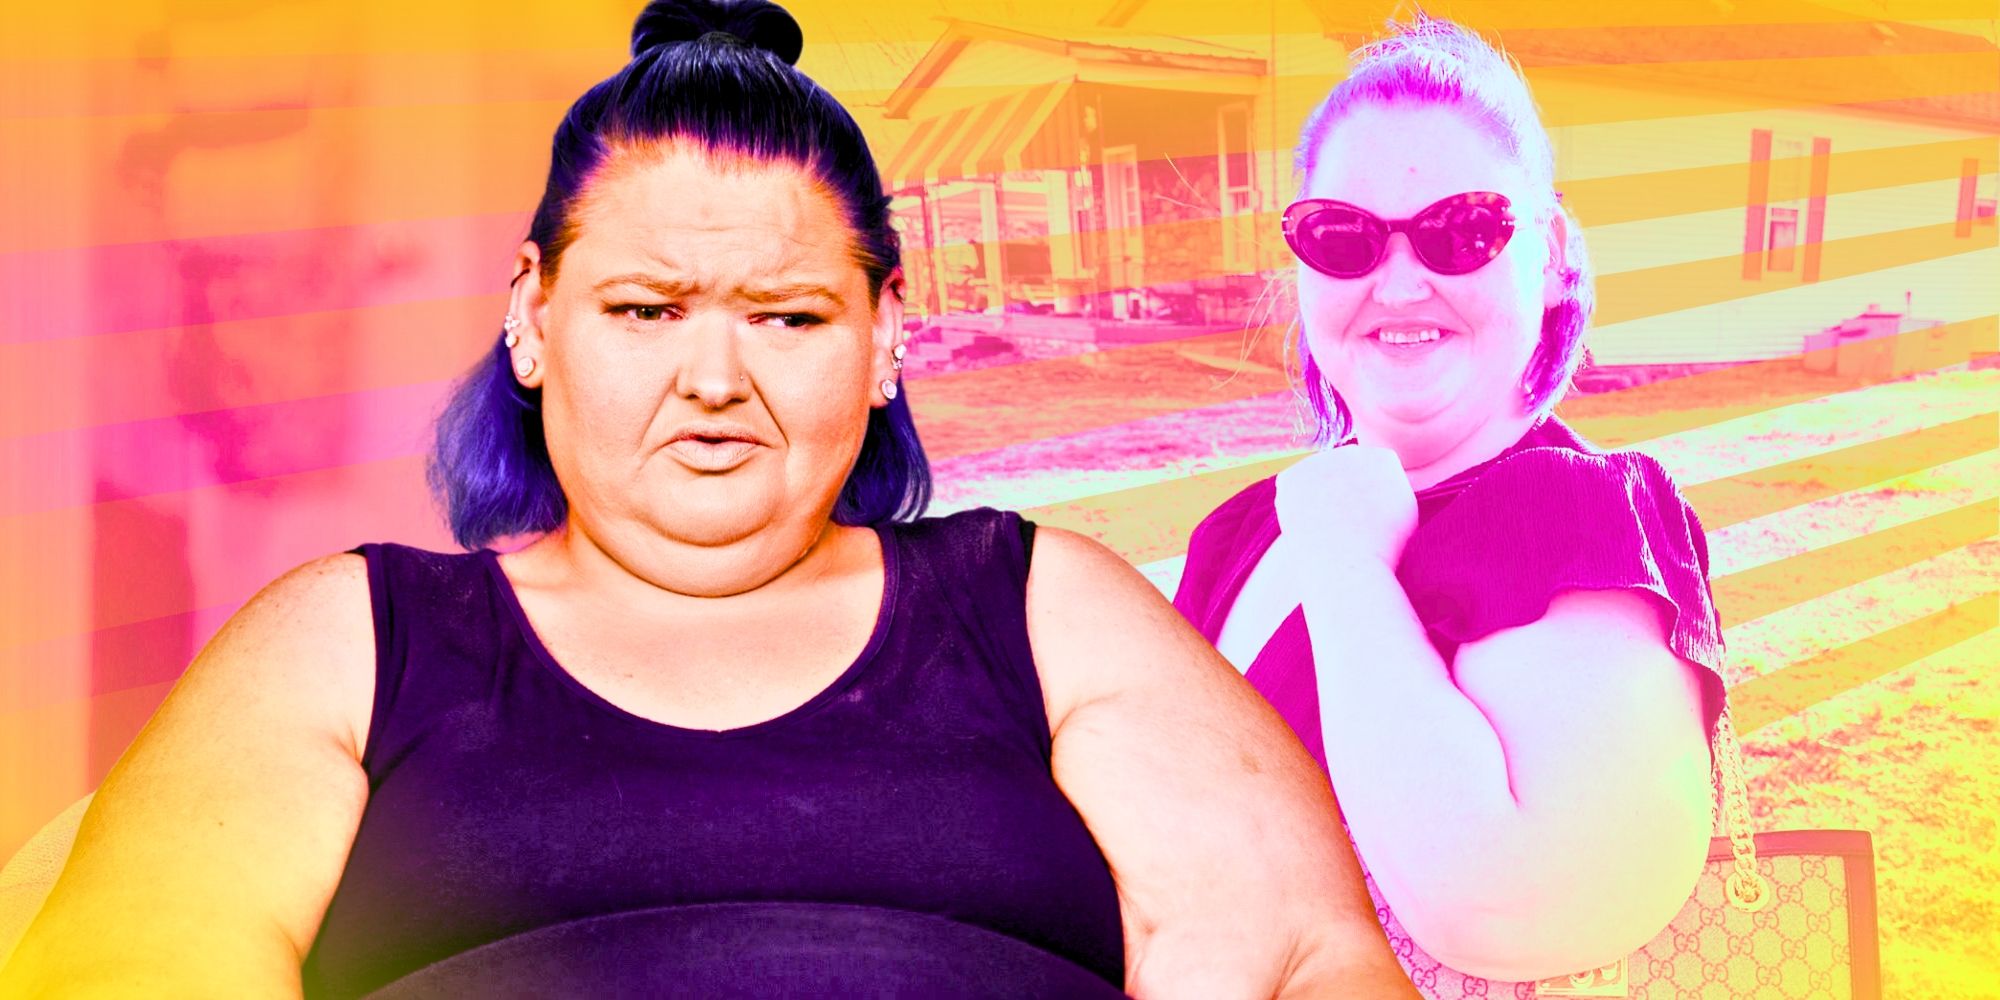 Amy Slaton de 1000-Lb Sisters dice que "la vida es buena" en medio del éxito de la pérdida de peso